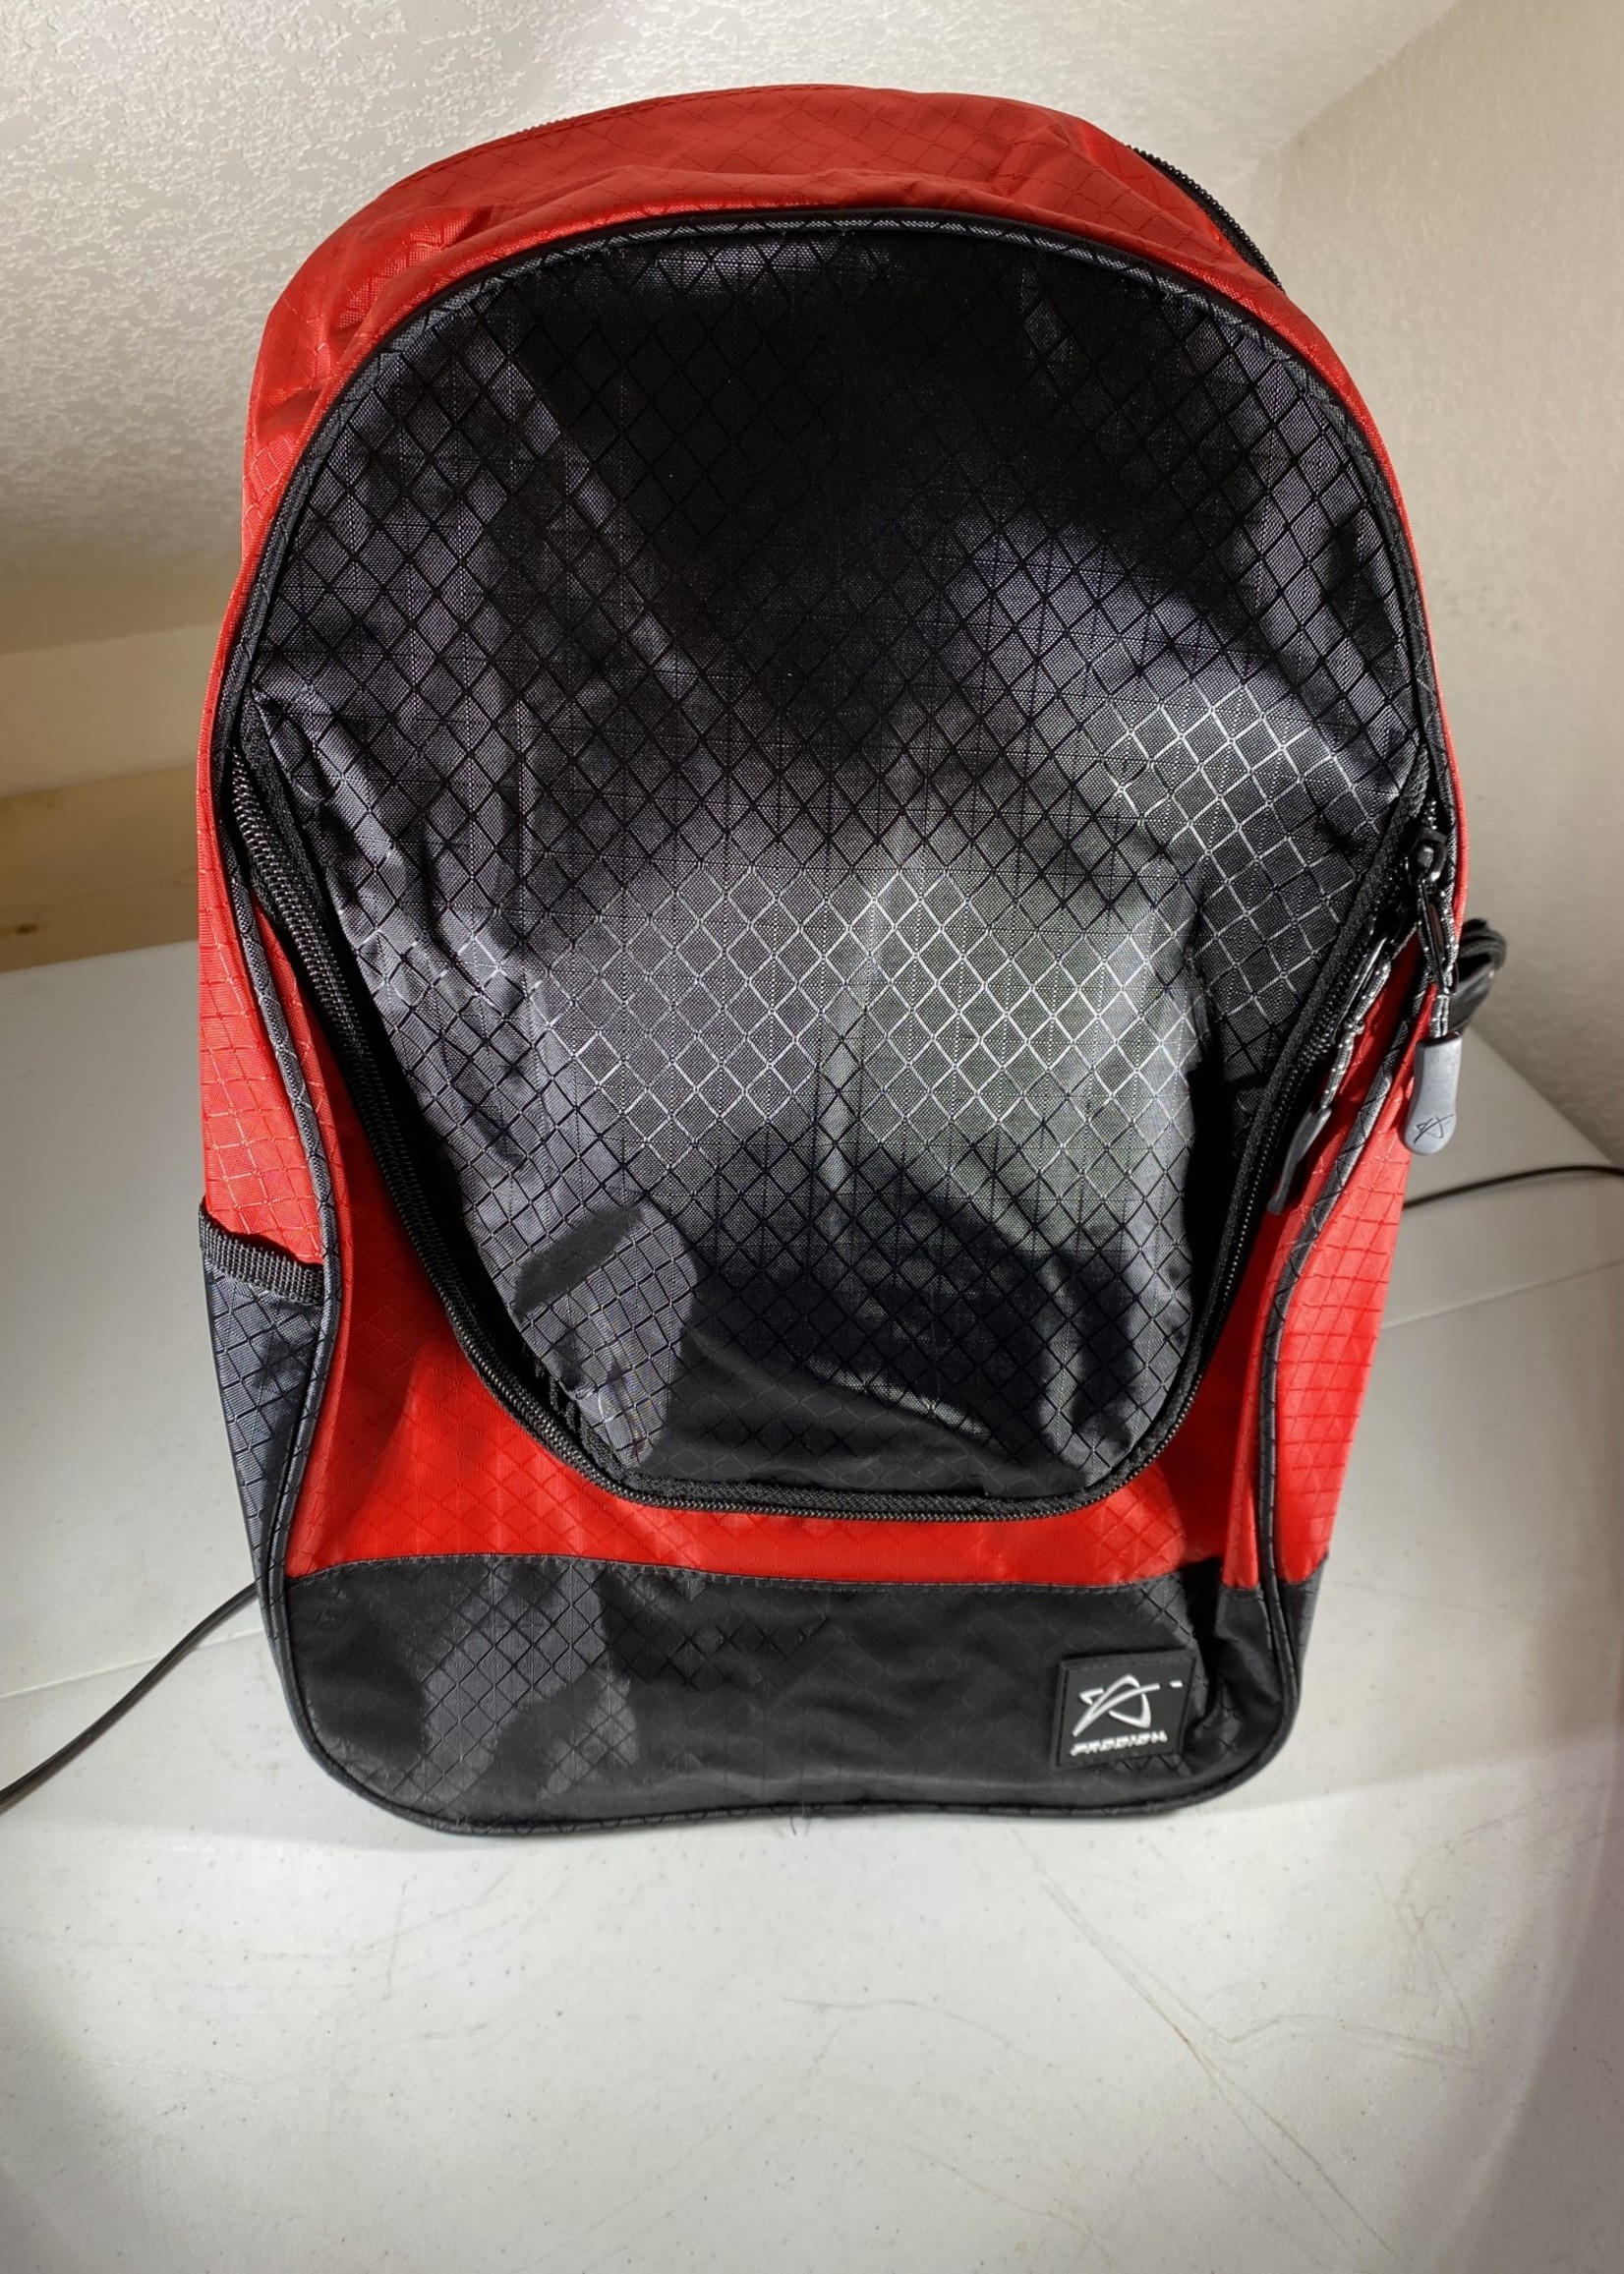 Prodigy Prodigy BP-4 Backpack